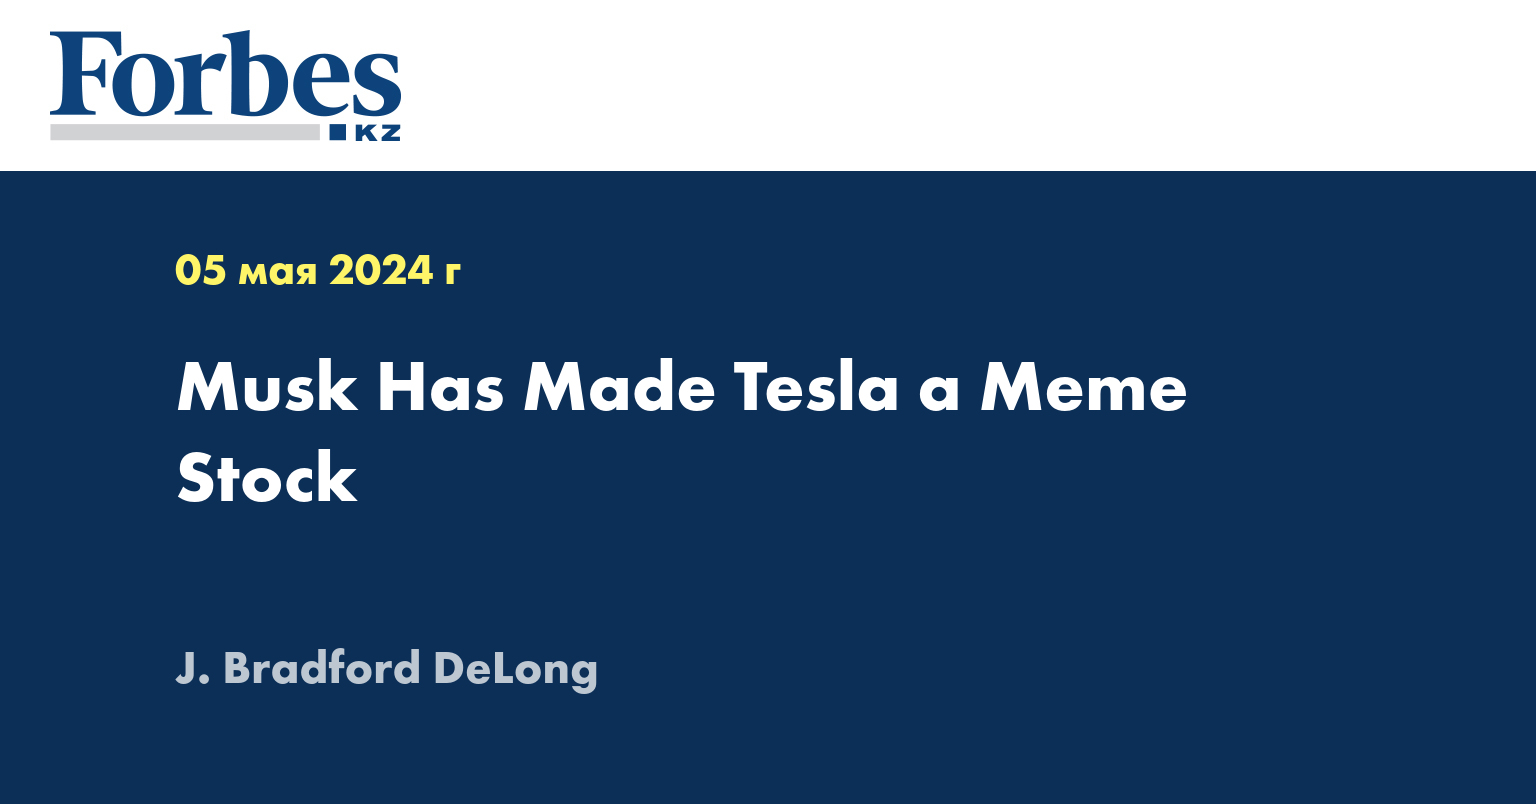 Musk Has Made Tesla a Meme Stock